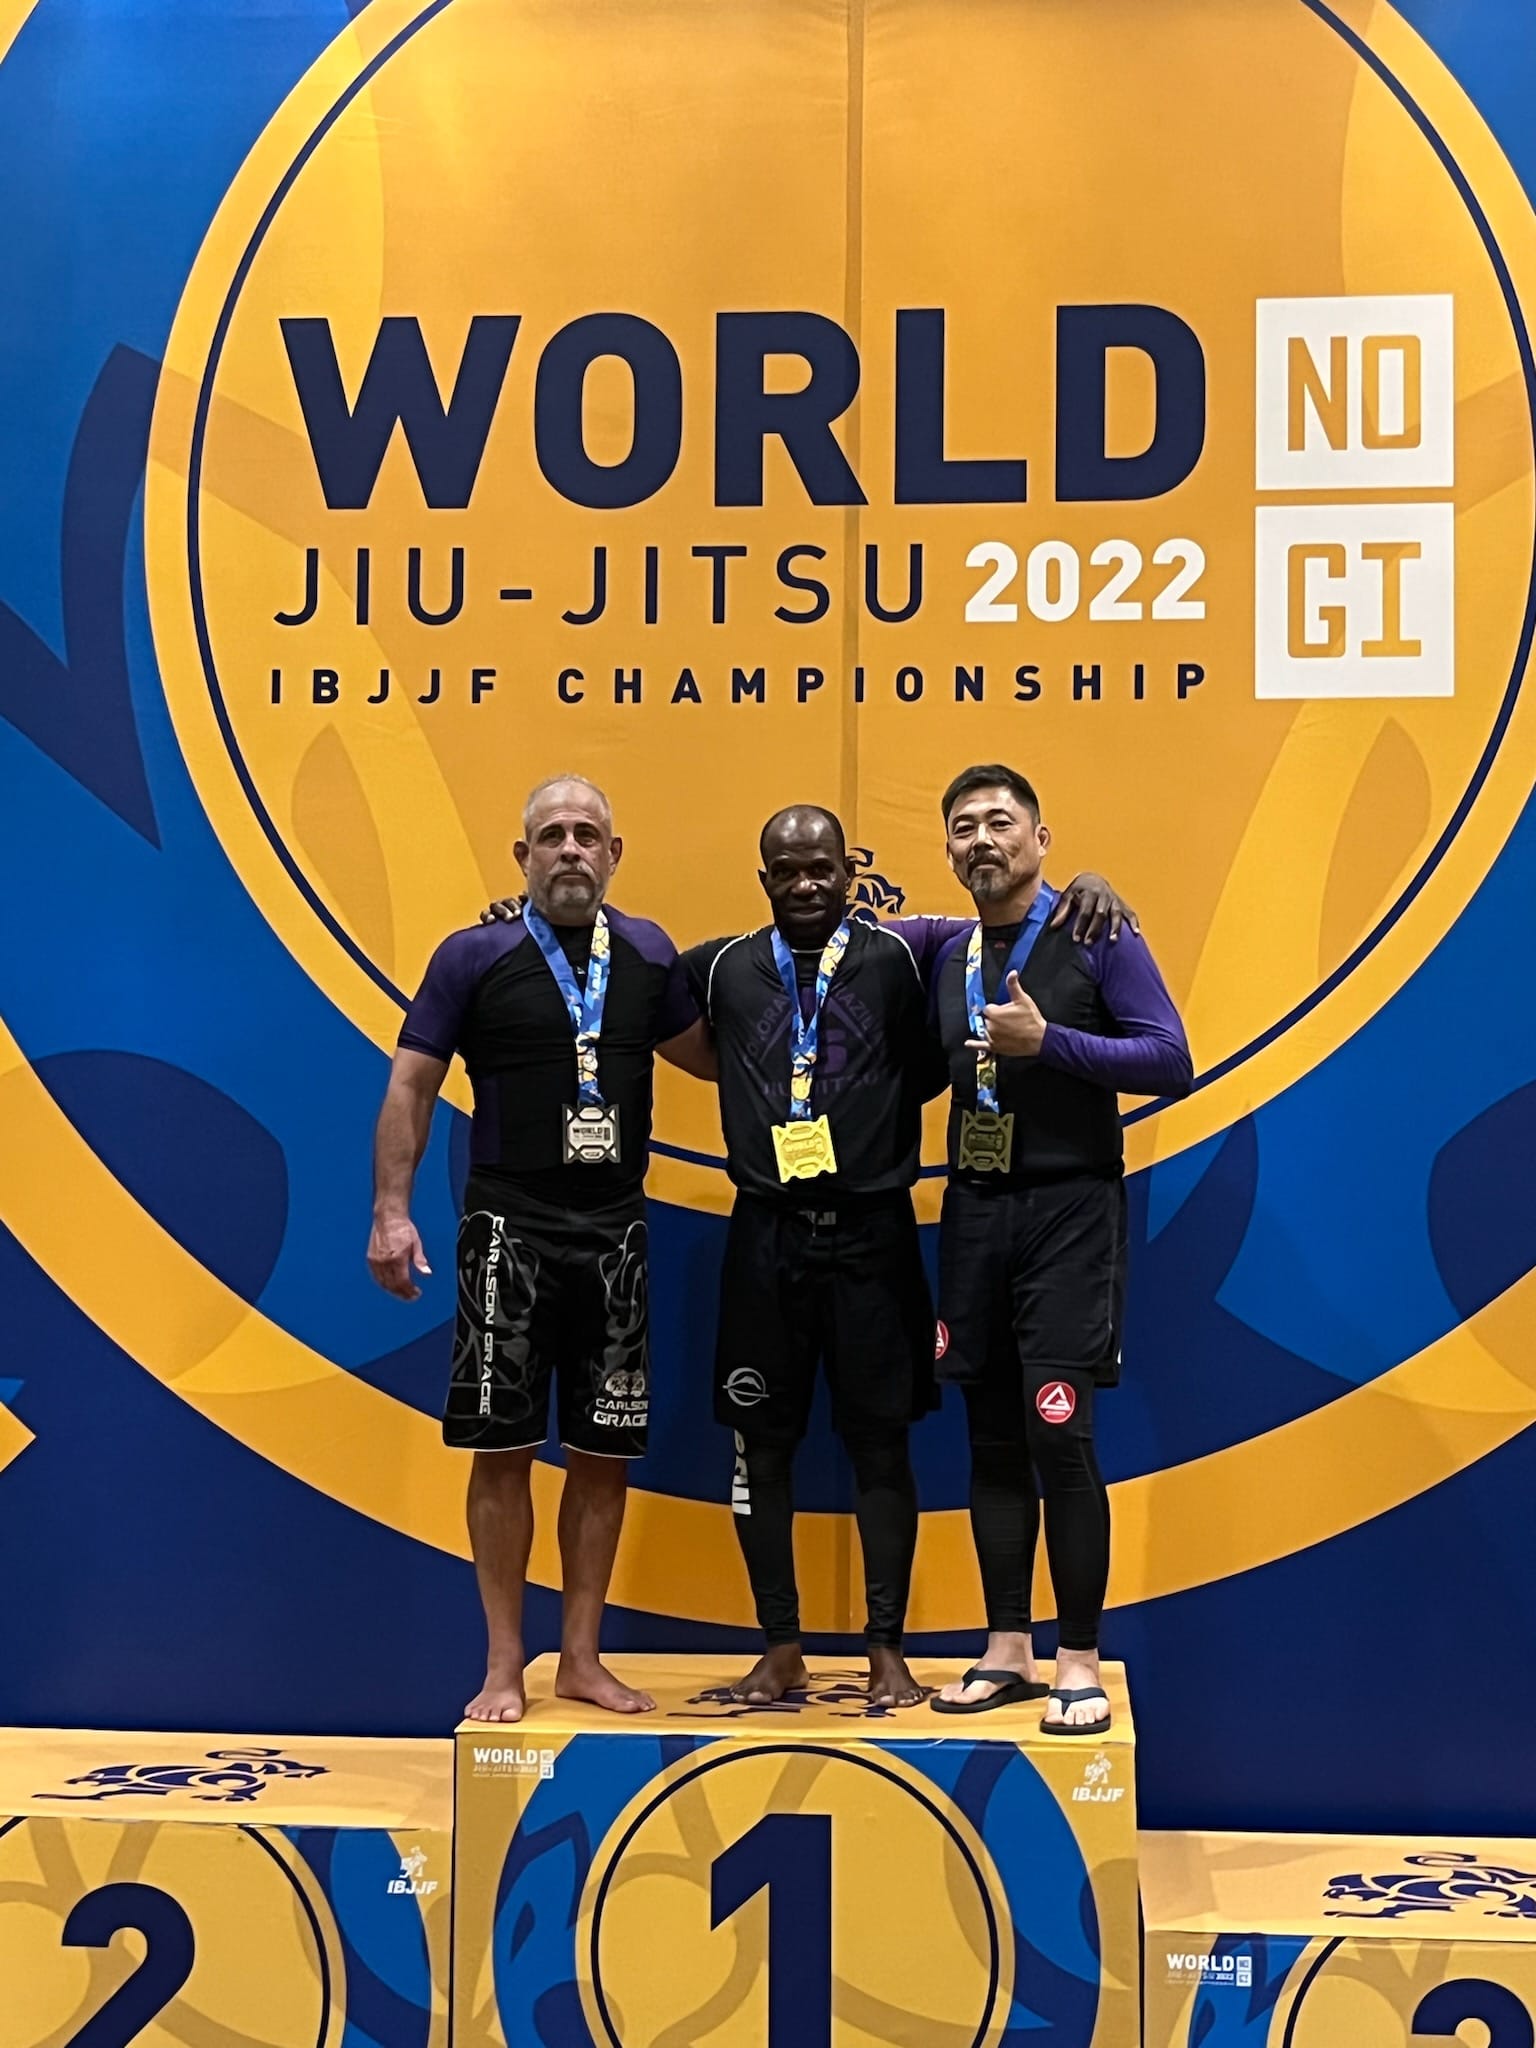 World IBJJF Jiu-Jitsu Championship - Wikipedia